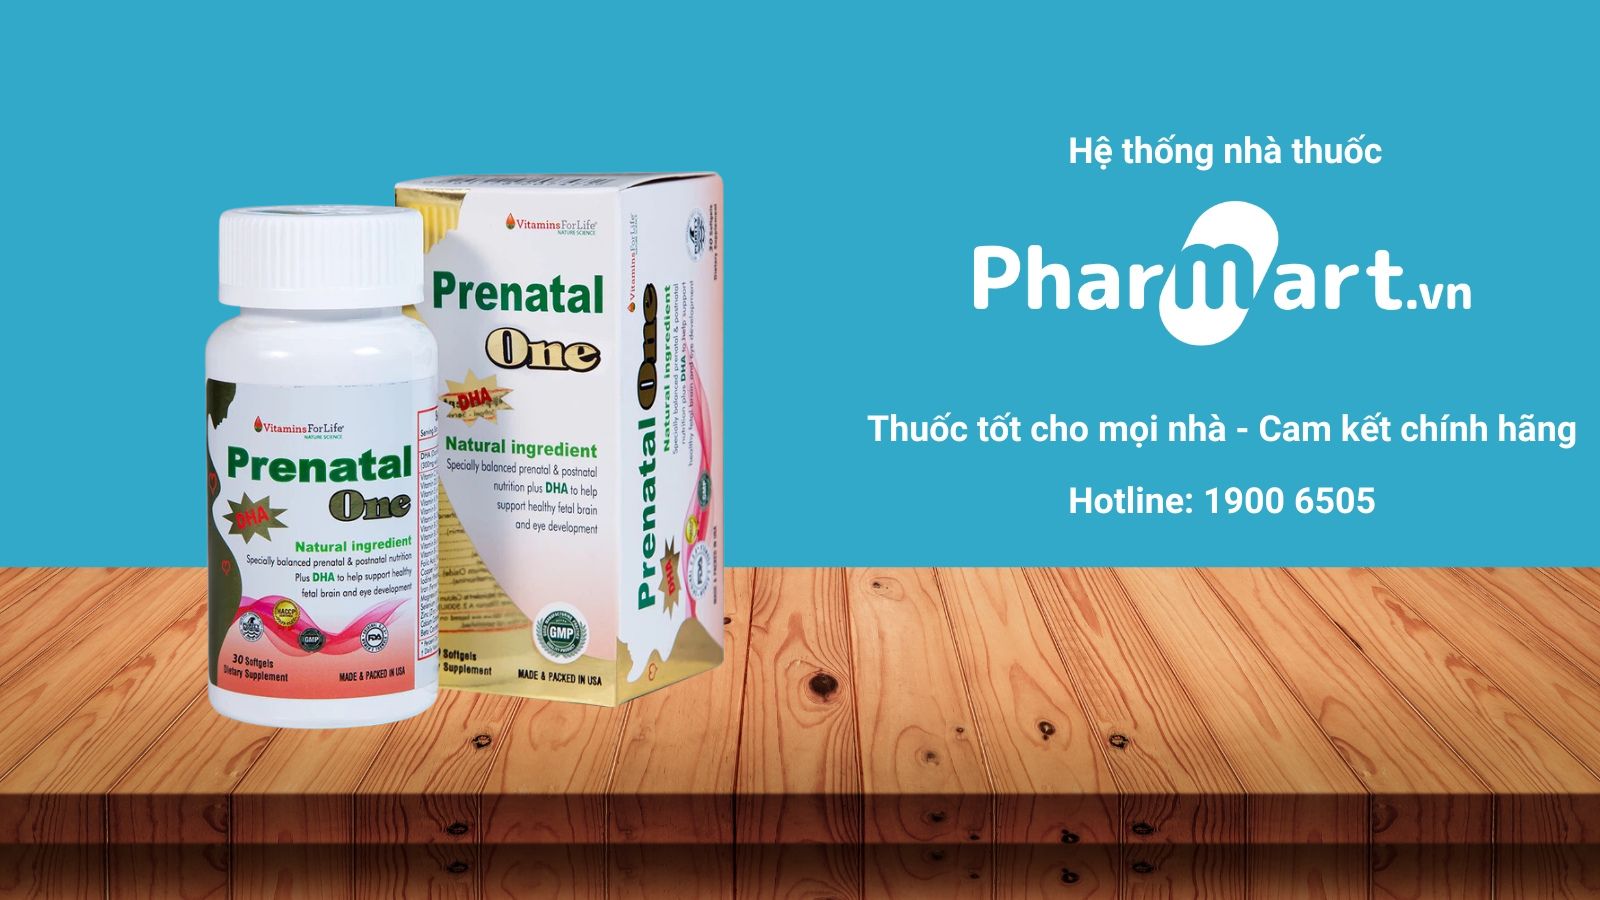 Mua Prenatal One chính hãng tại Pharmart.vn